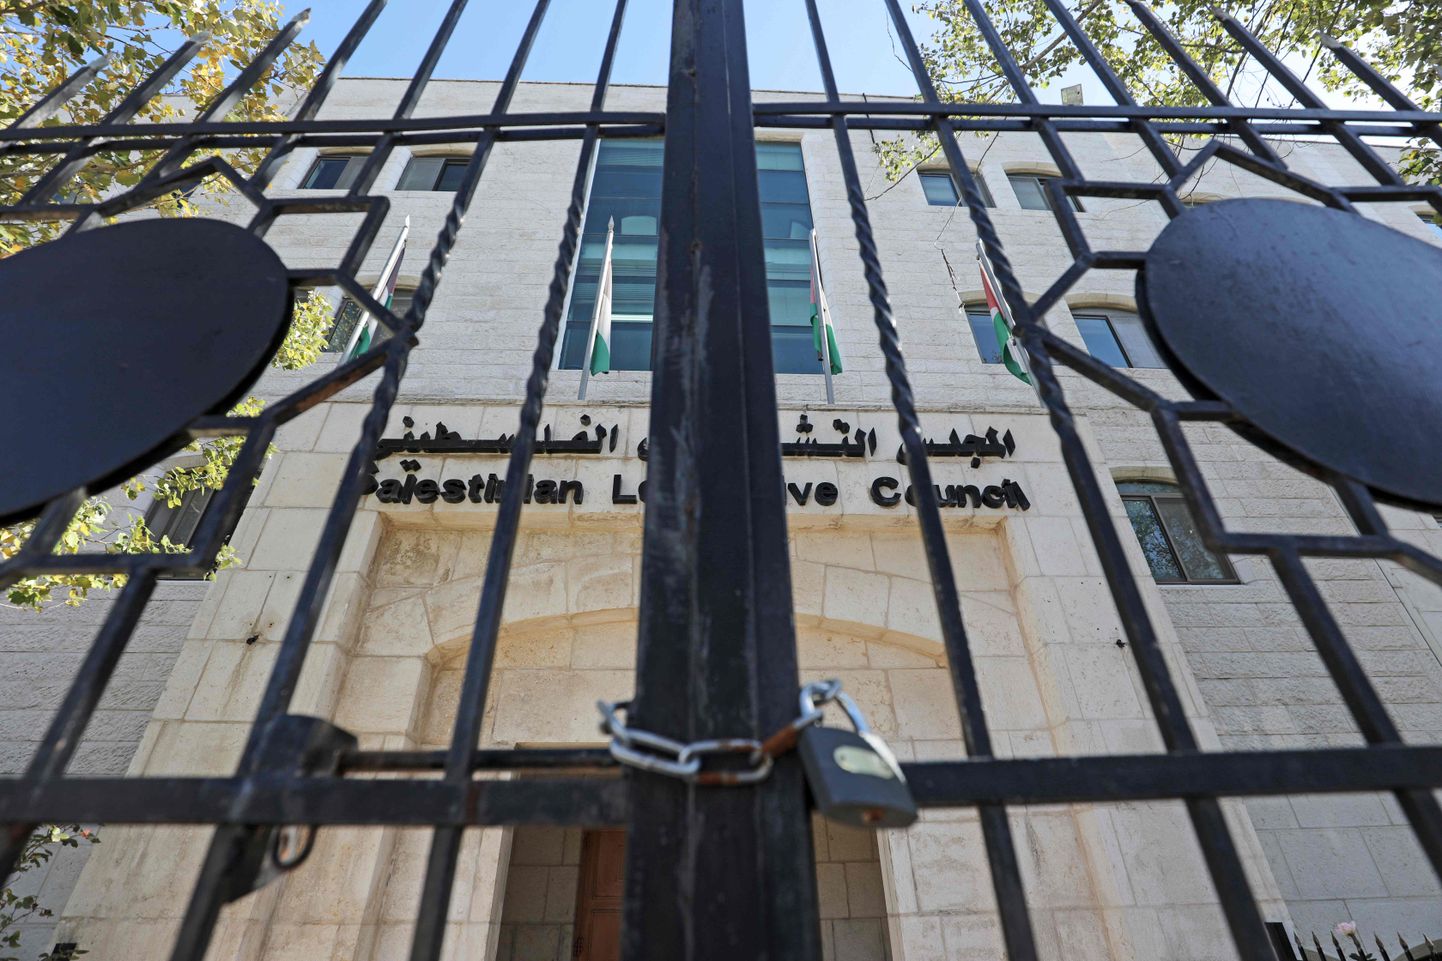 Trellitatud värava taga asuvat Palestiina parlamendi peasissepääsu valvab relvastatud korrakaitsja,mis siis et saadikud ei ole juba aastaid istungeid pidanud.